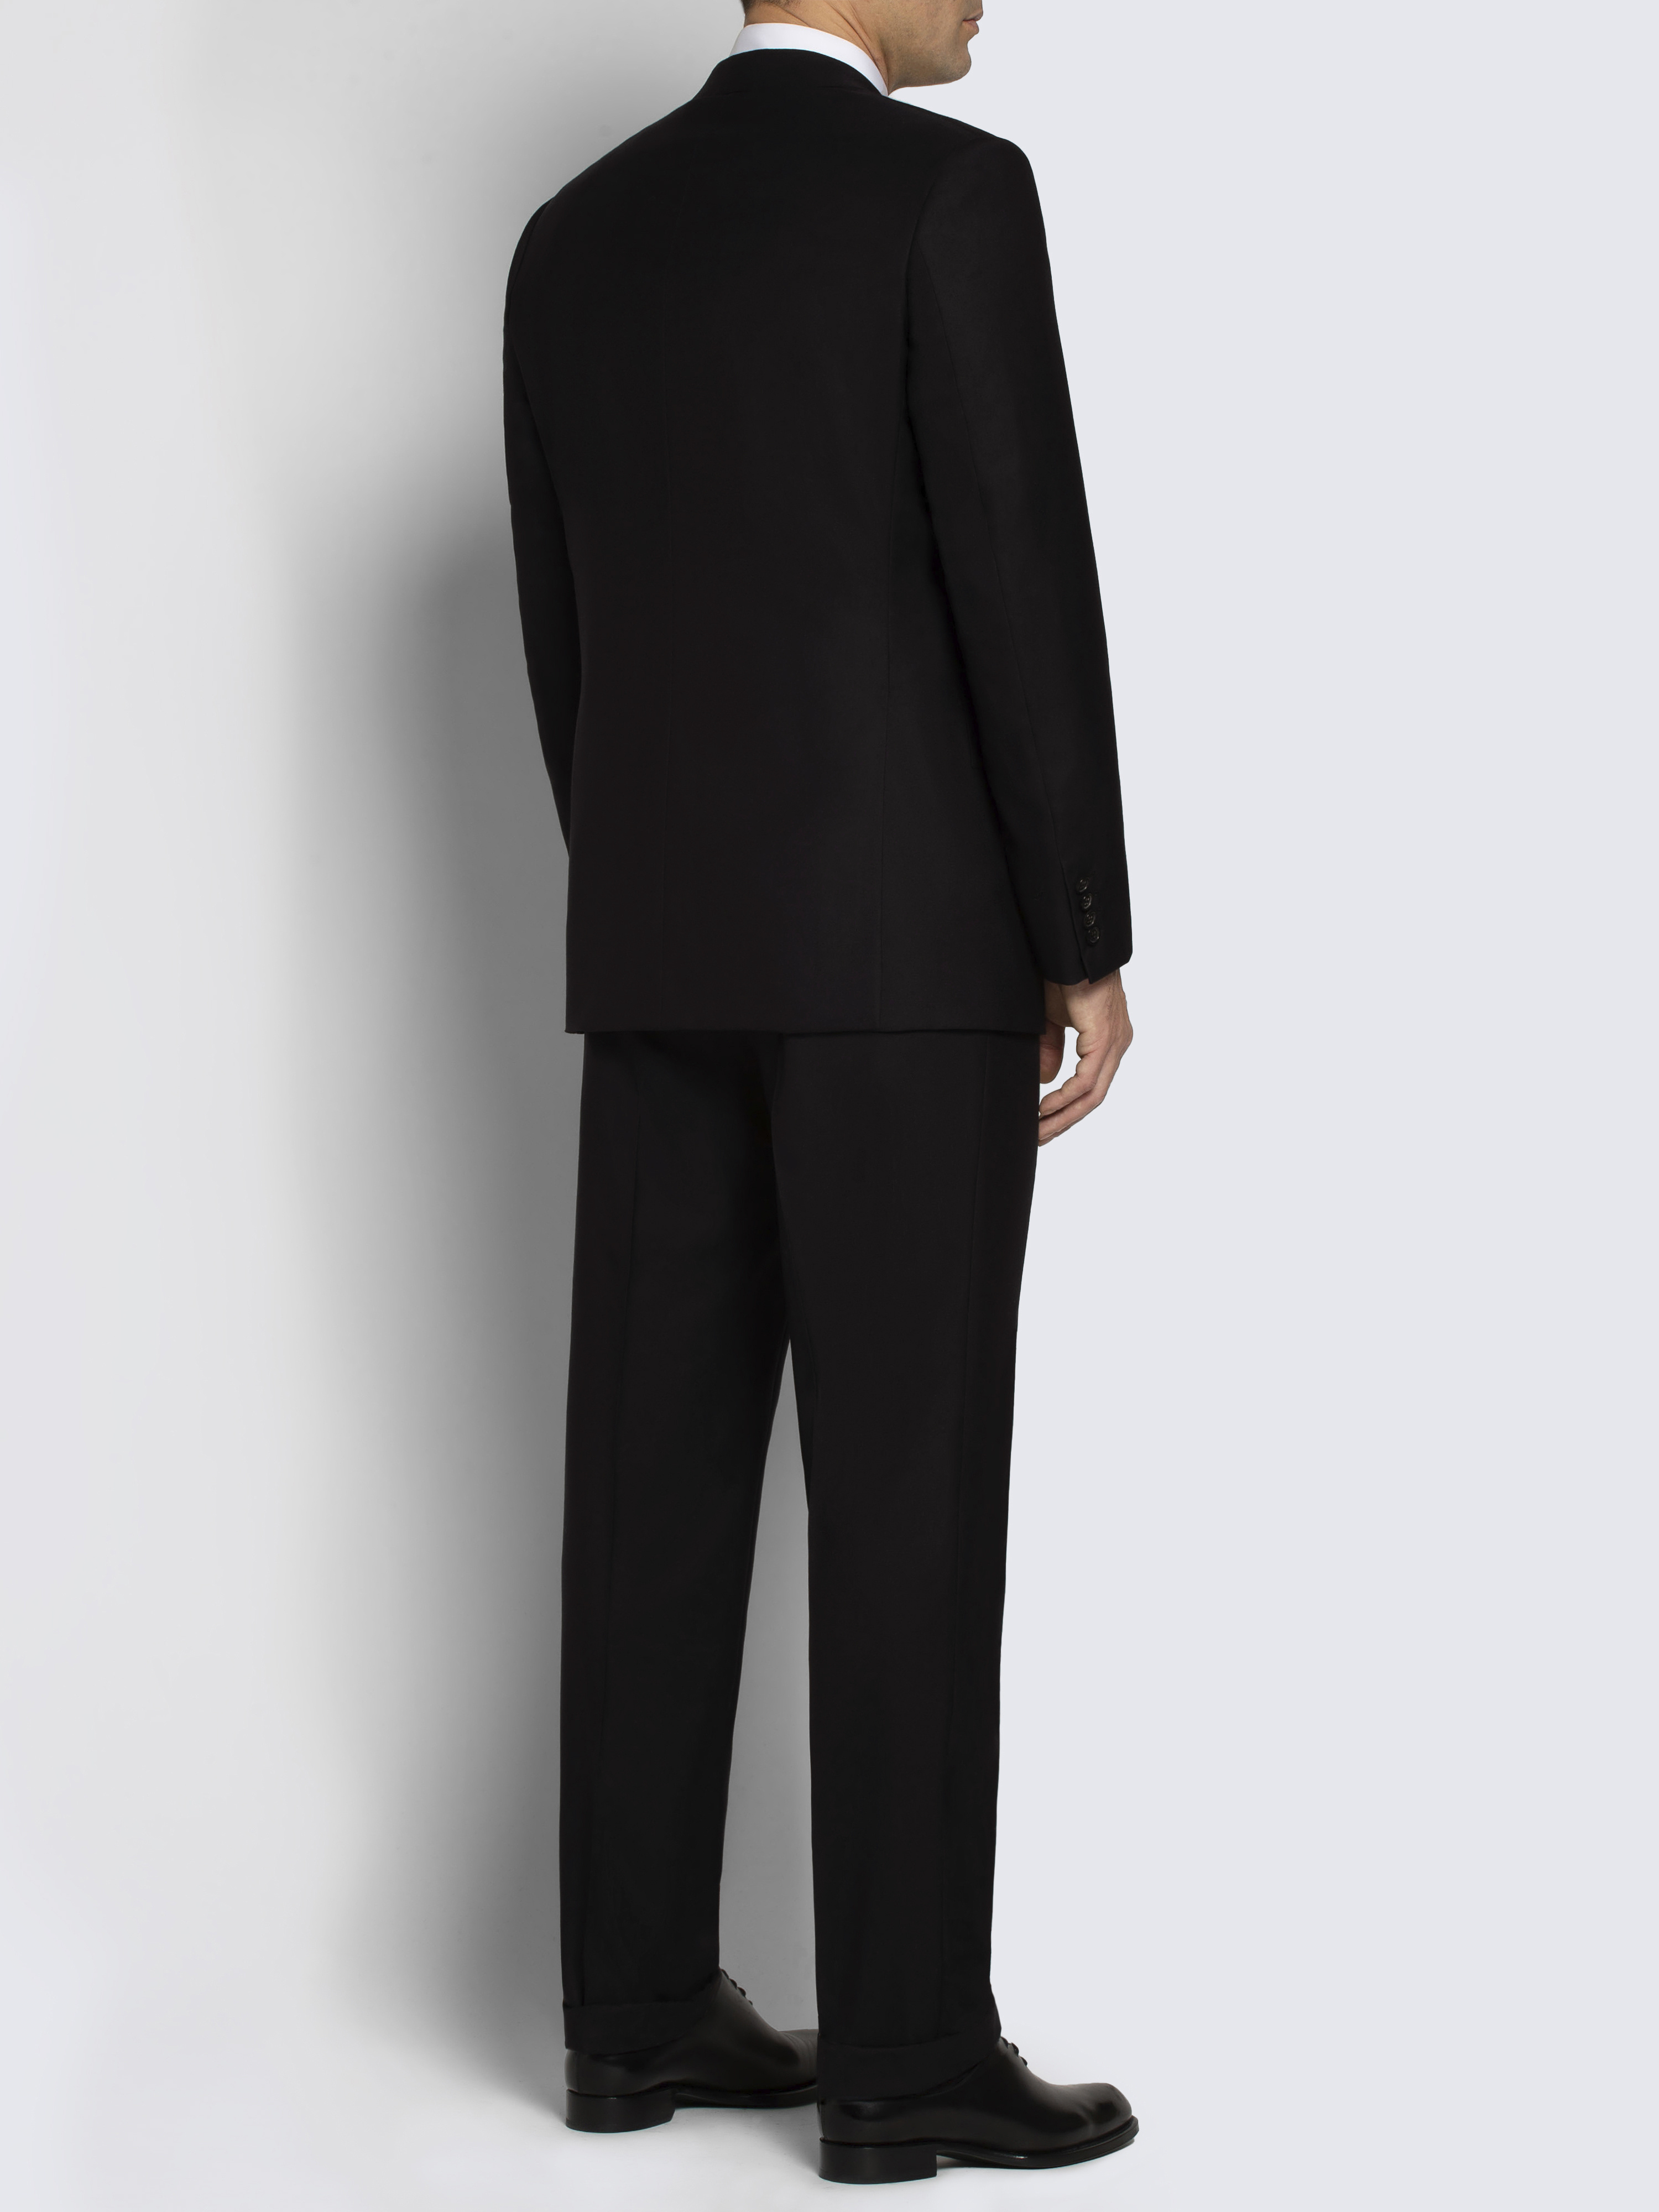 Essential ブルニコ スーツ ブラックスーパー160バージンウール